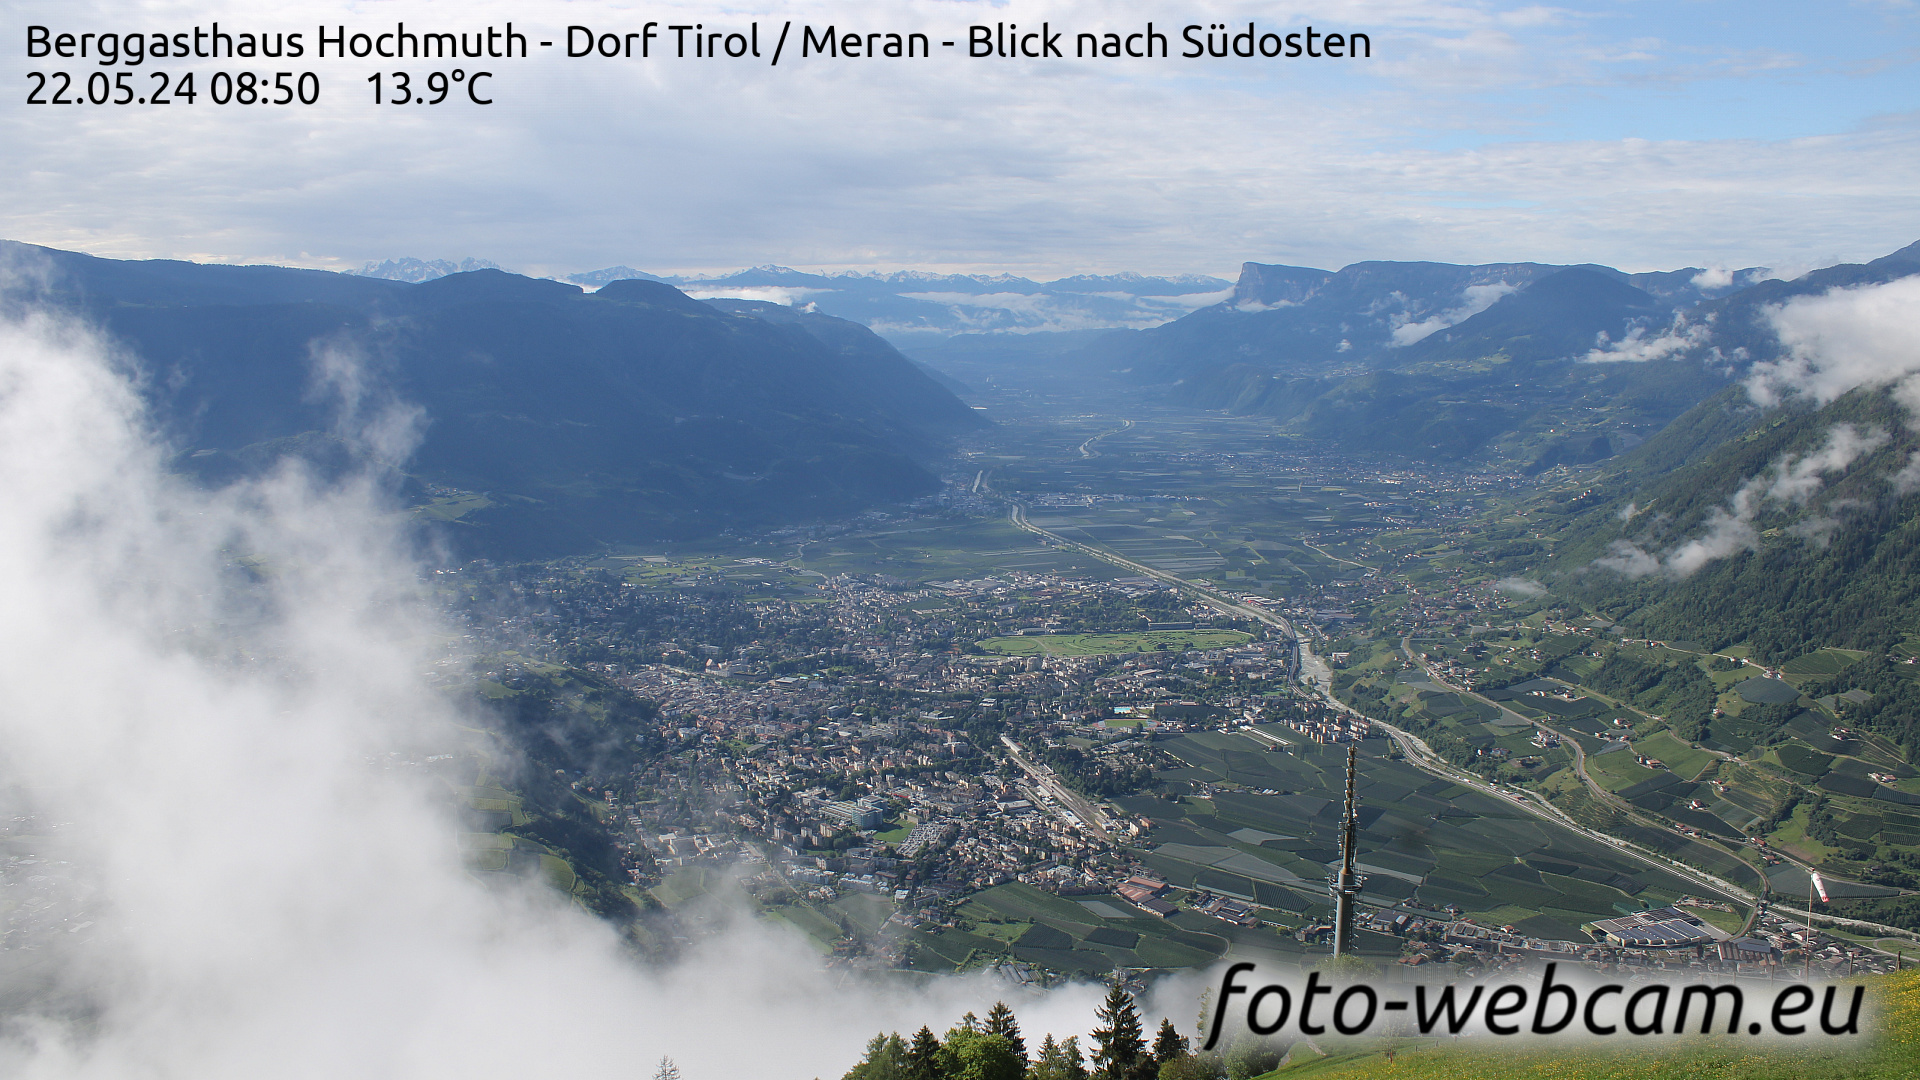 Dorf Tirol Tir. 08:56